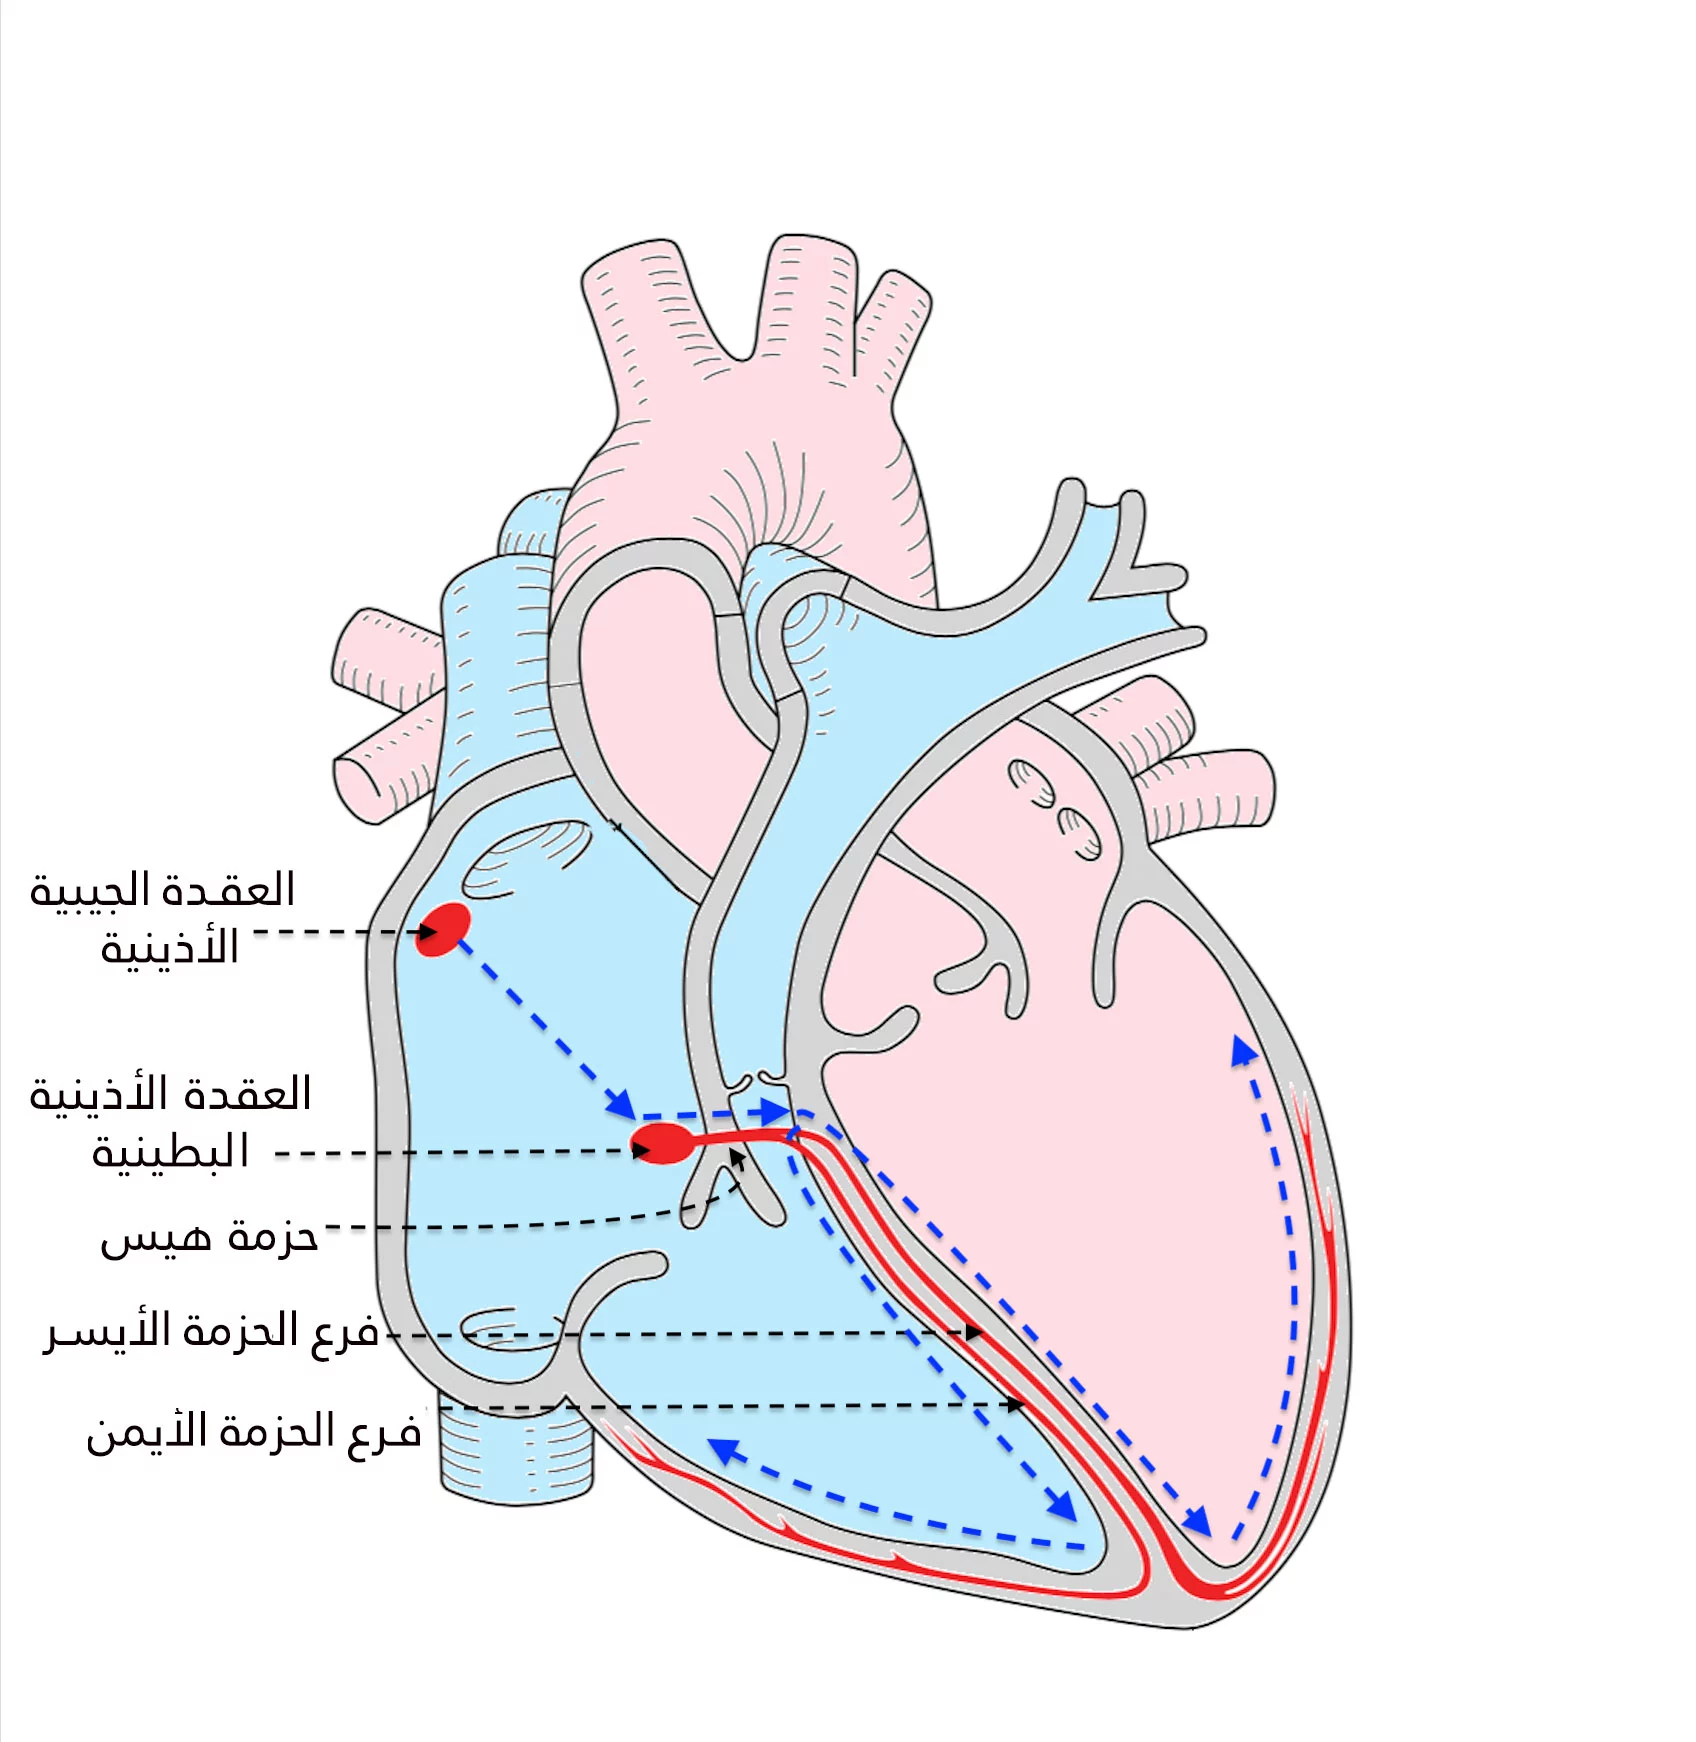 SA düğümü, özel demetler aracılığıyla AV düğümüne ve oradan da kalbin tüm bölümlerine iletilen elektriksel uyarılar üretir.